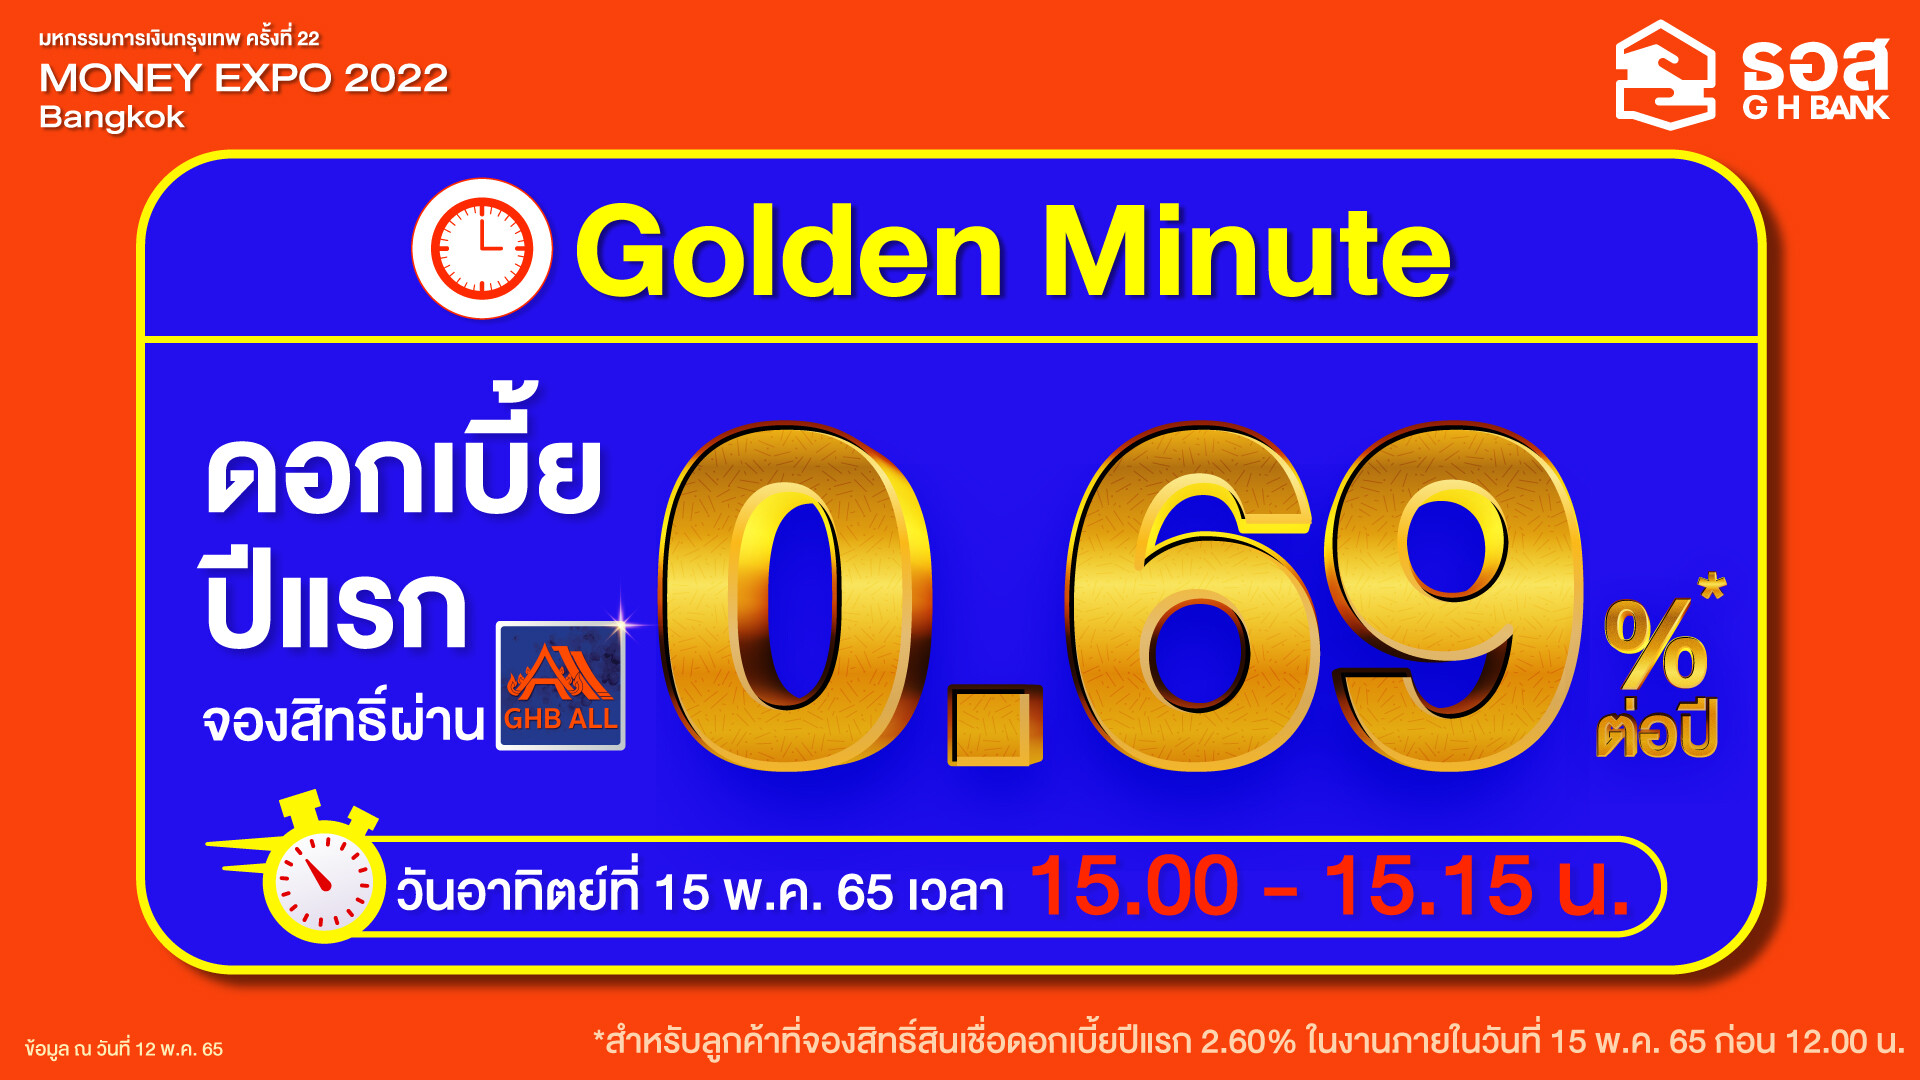 ธอส. ปล่อยของ!! สินเชื่อบ้าน Golden Minute ดอกเบี้ยปีแรกเพียง 0.69% ต่อปี เฉพาะที่งานมหกรรมการเงินกรุงเทพฯ Money Expo 2022